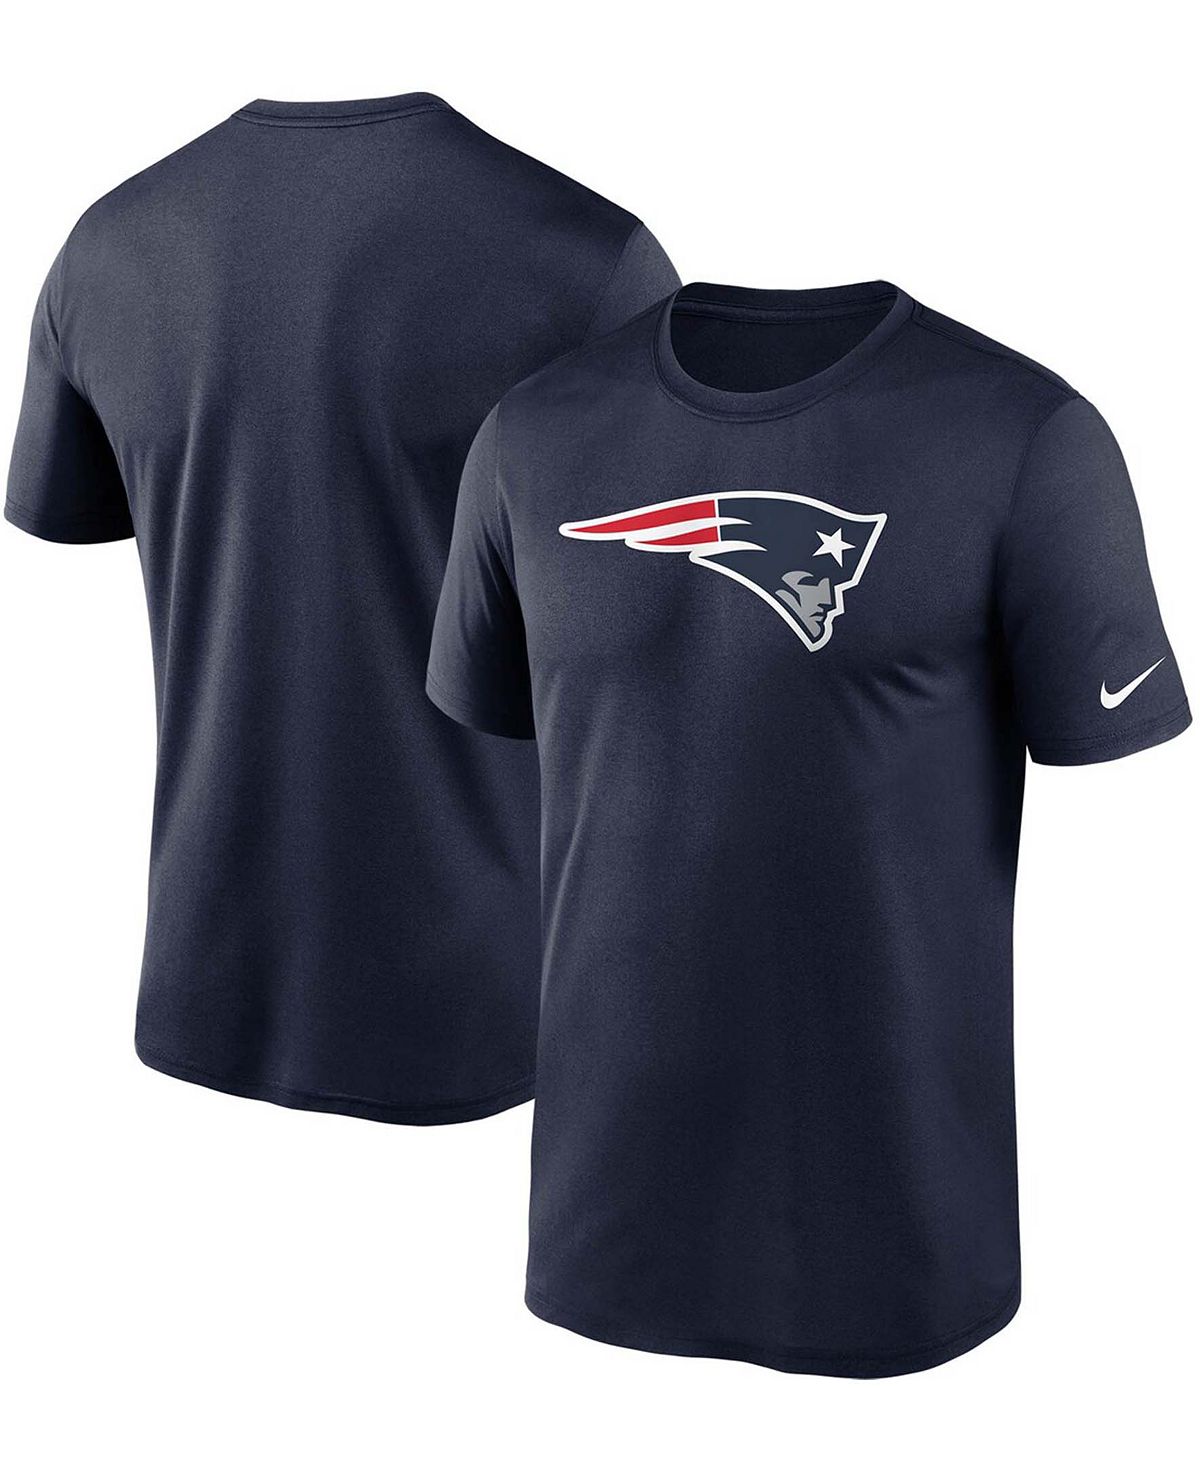 Мужская темно-синяя футболка Big and Tall New England Patriots с логотипом Essential Legend Performance Nike